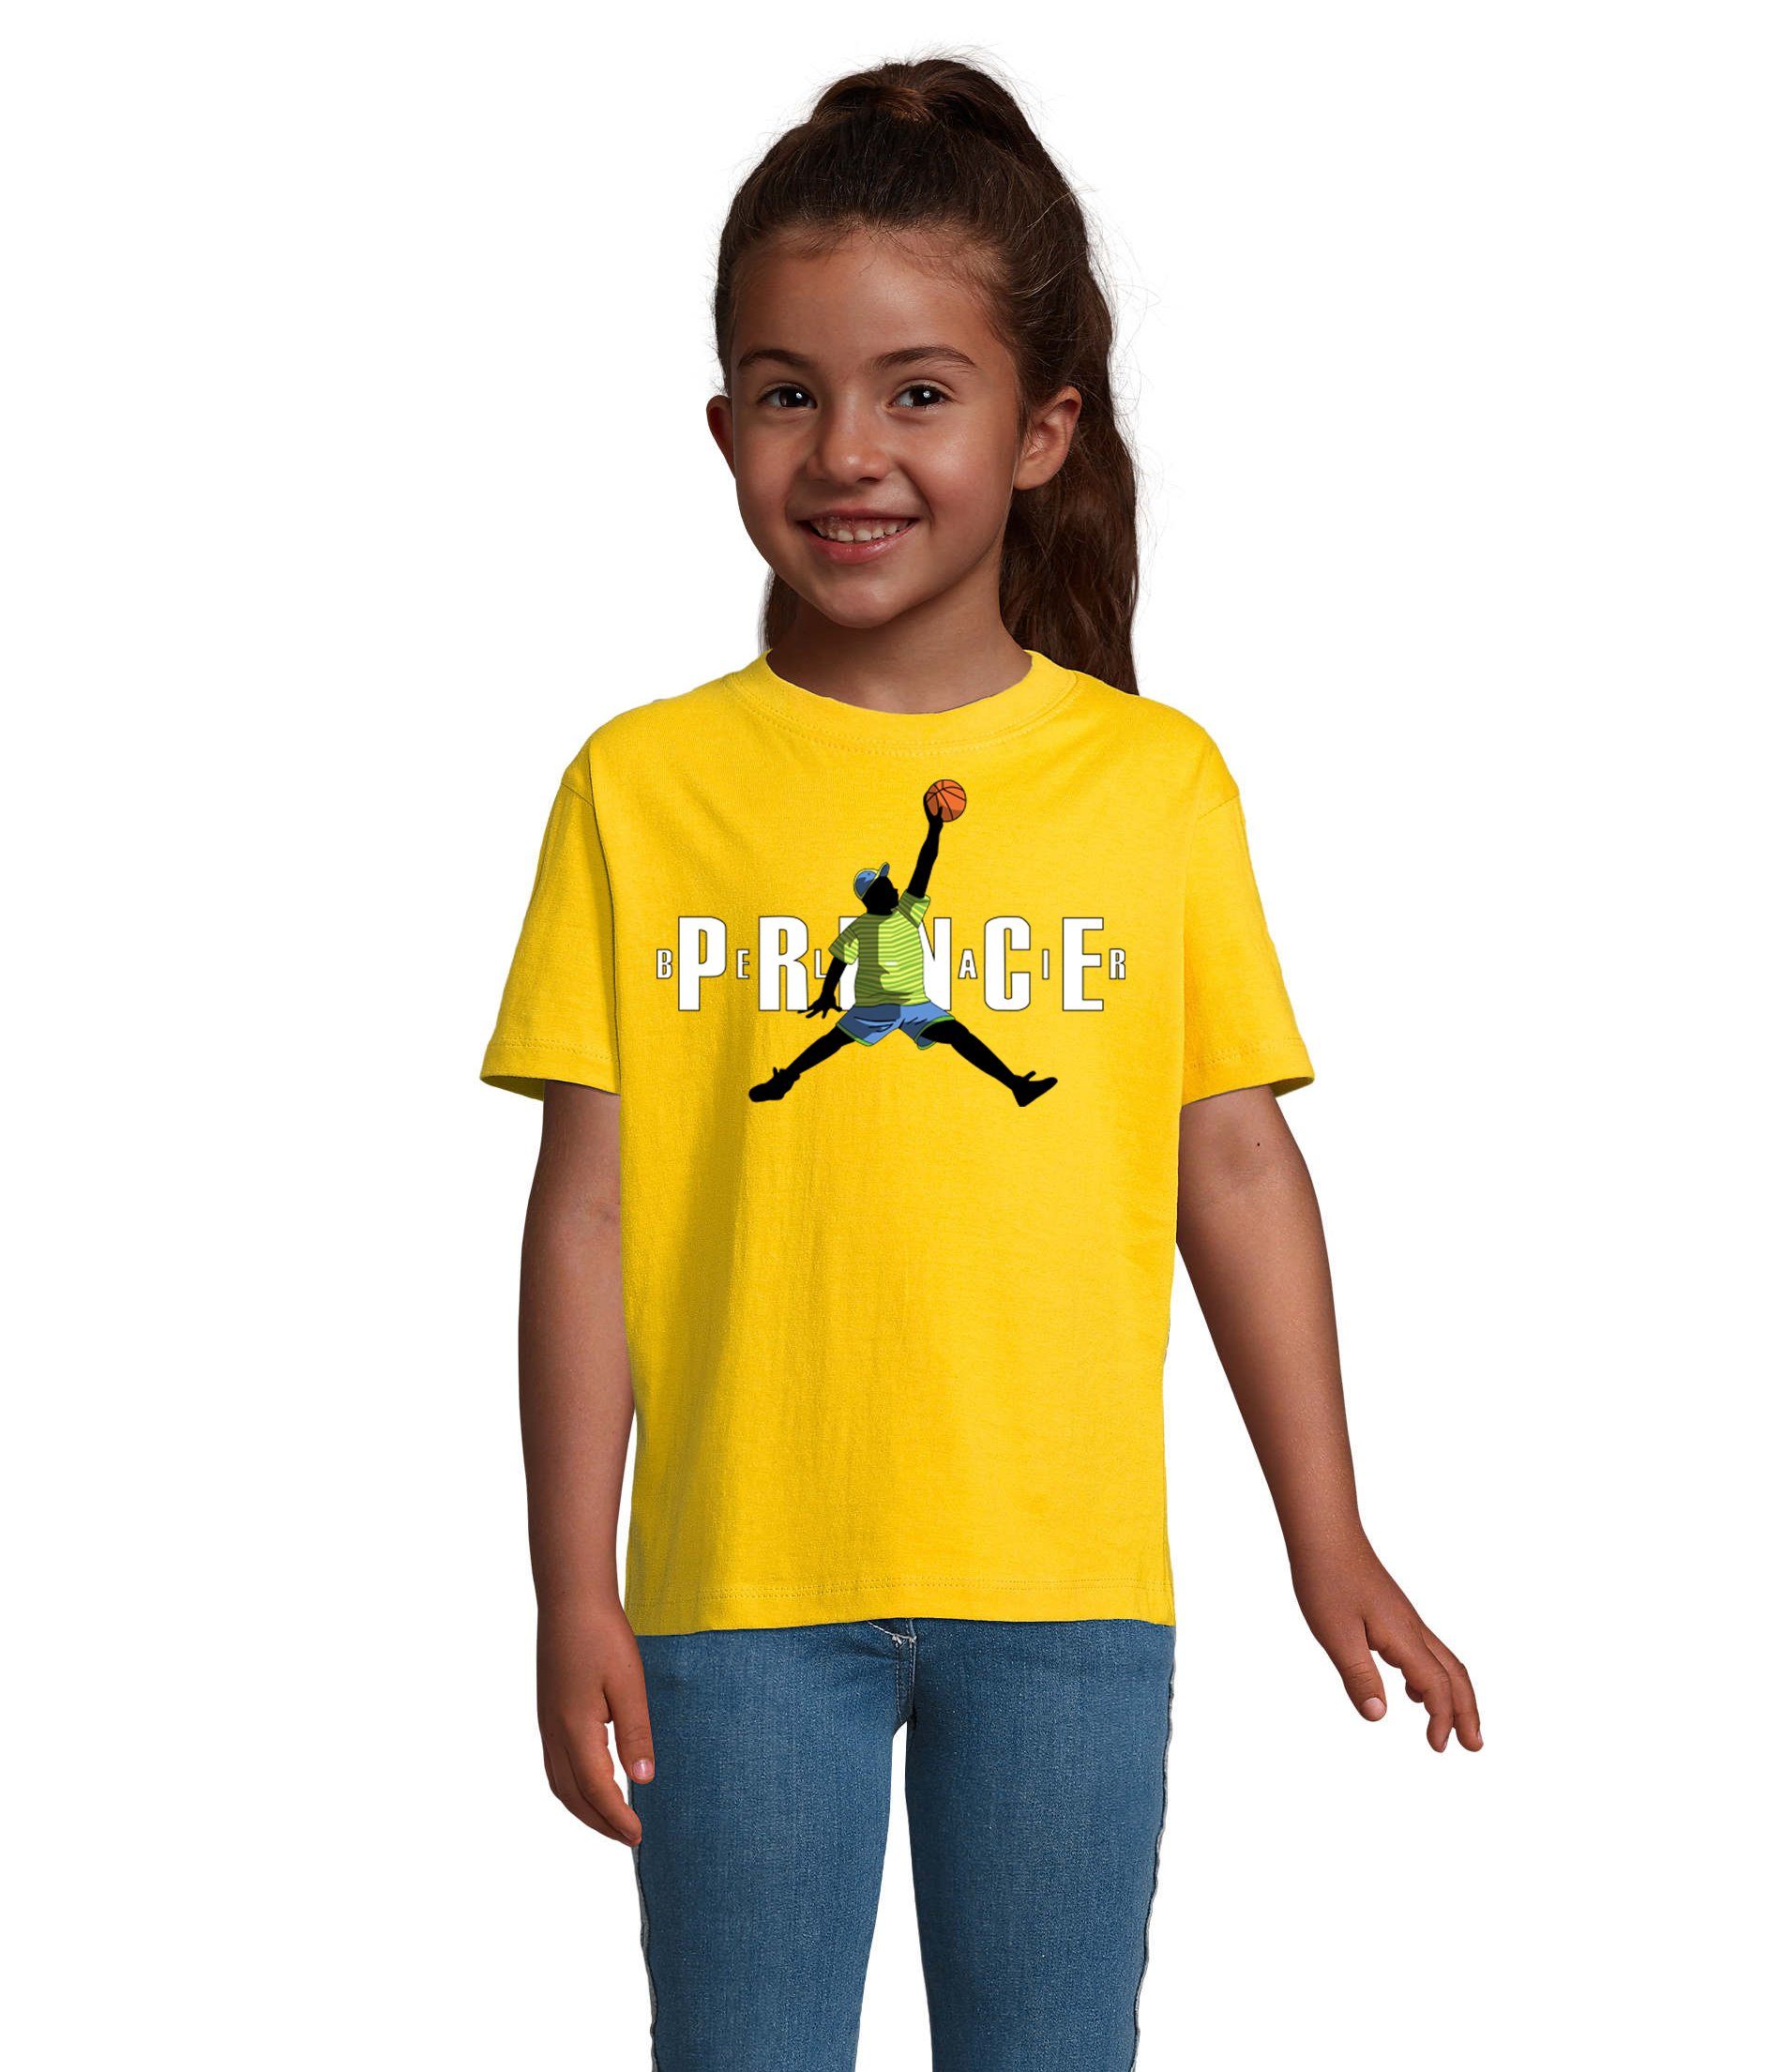 Blondie & Brownie T-Shirt Kinder Jungen & Mädchen Fresh Prince Bel Air Basketball in vielen Farben Gelb